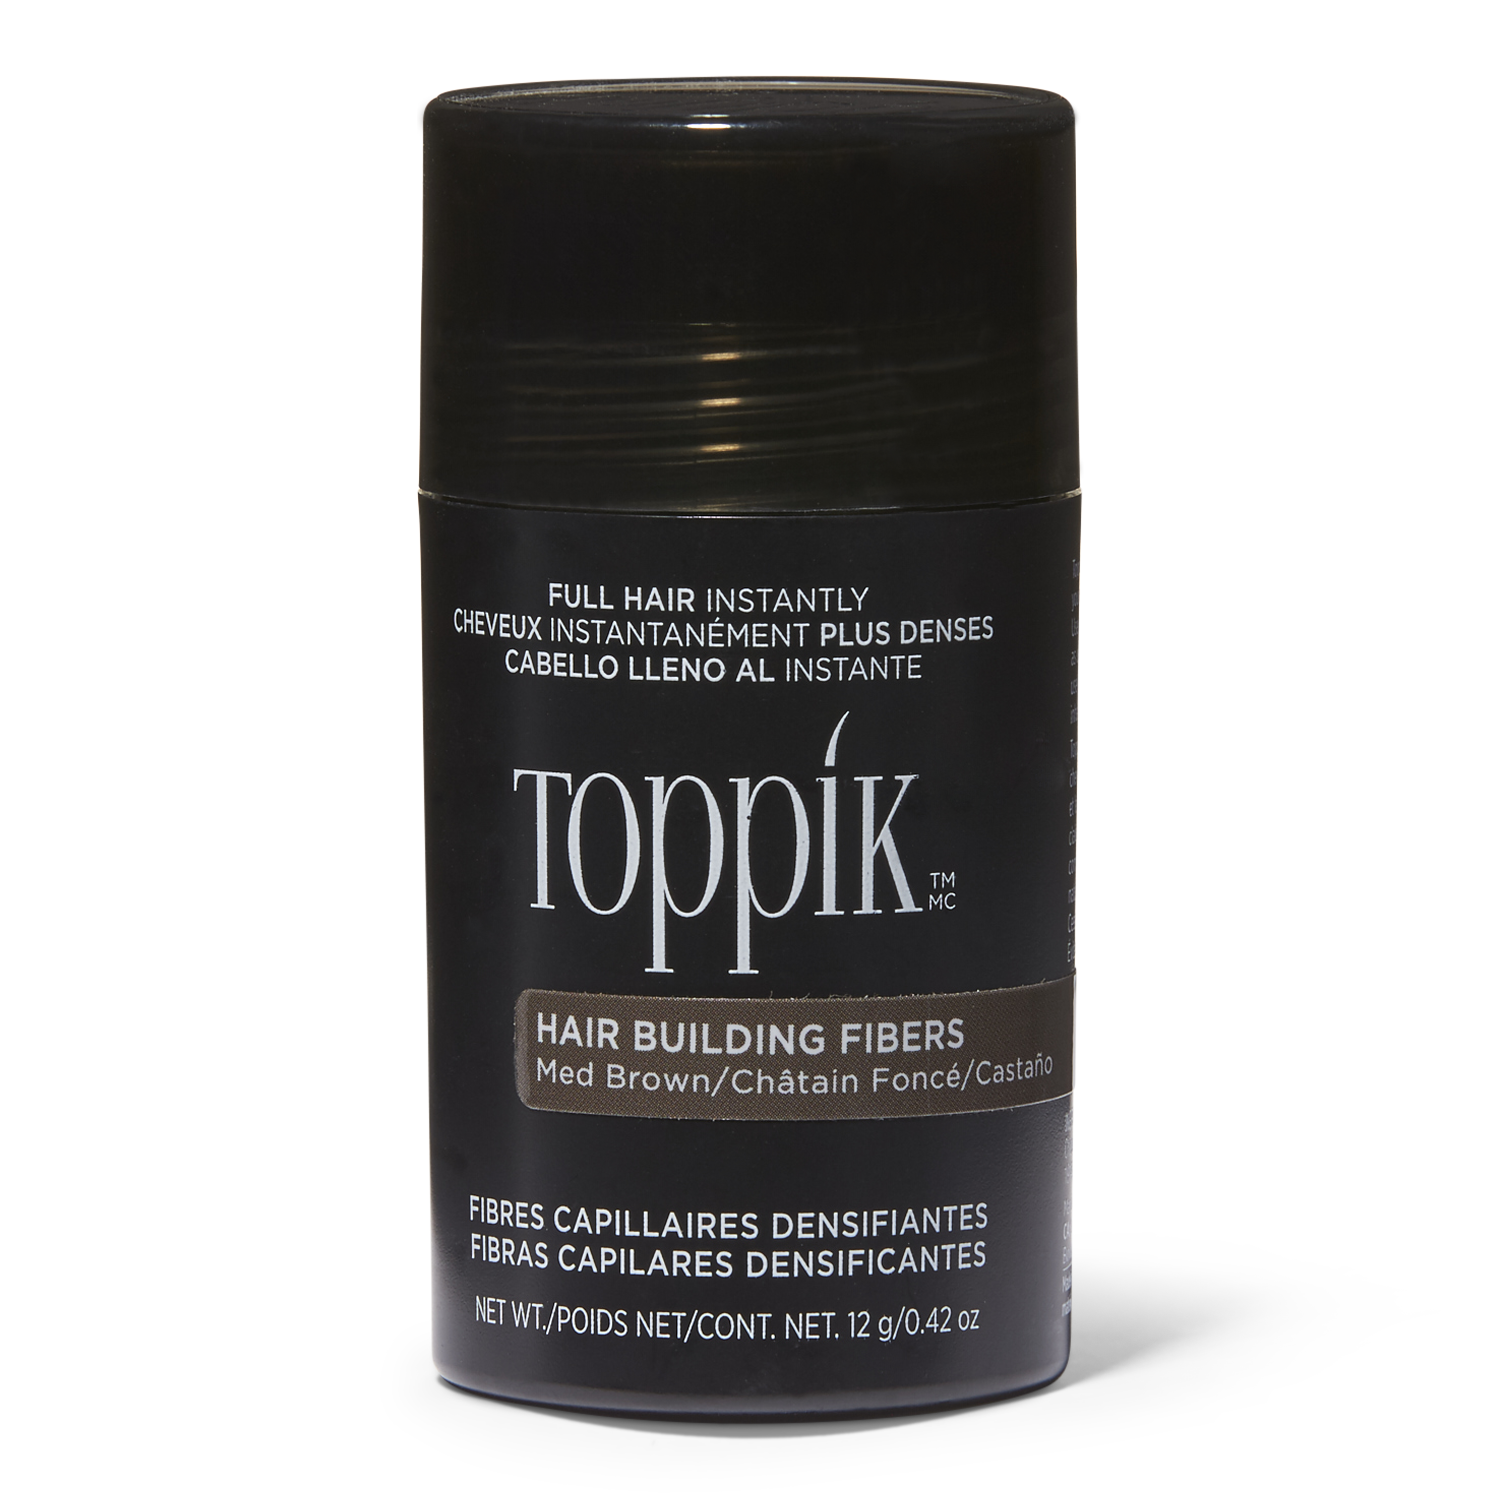 toppik hair building fibers